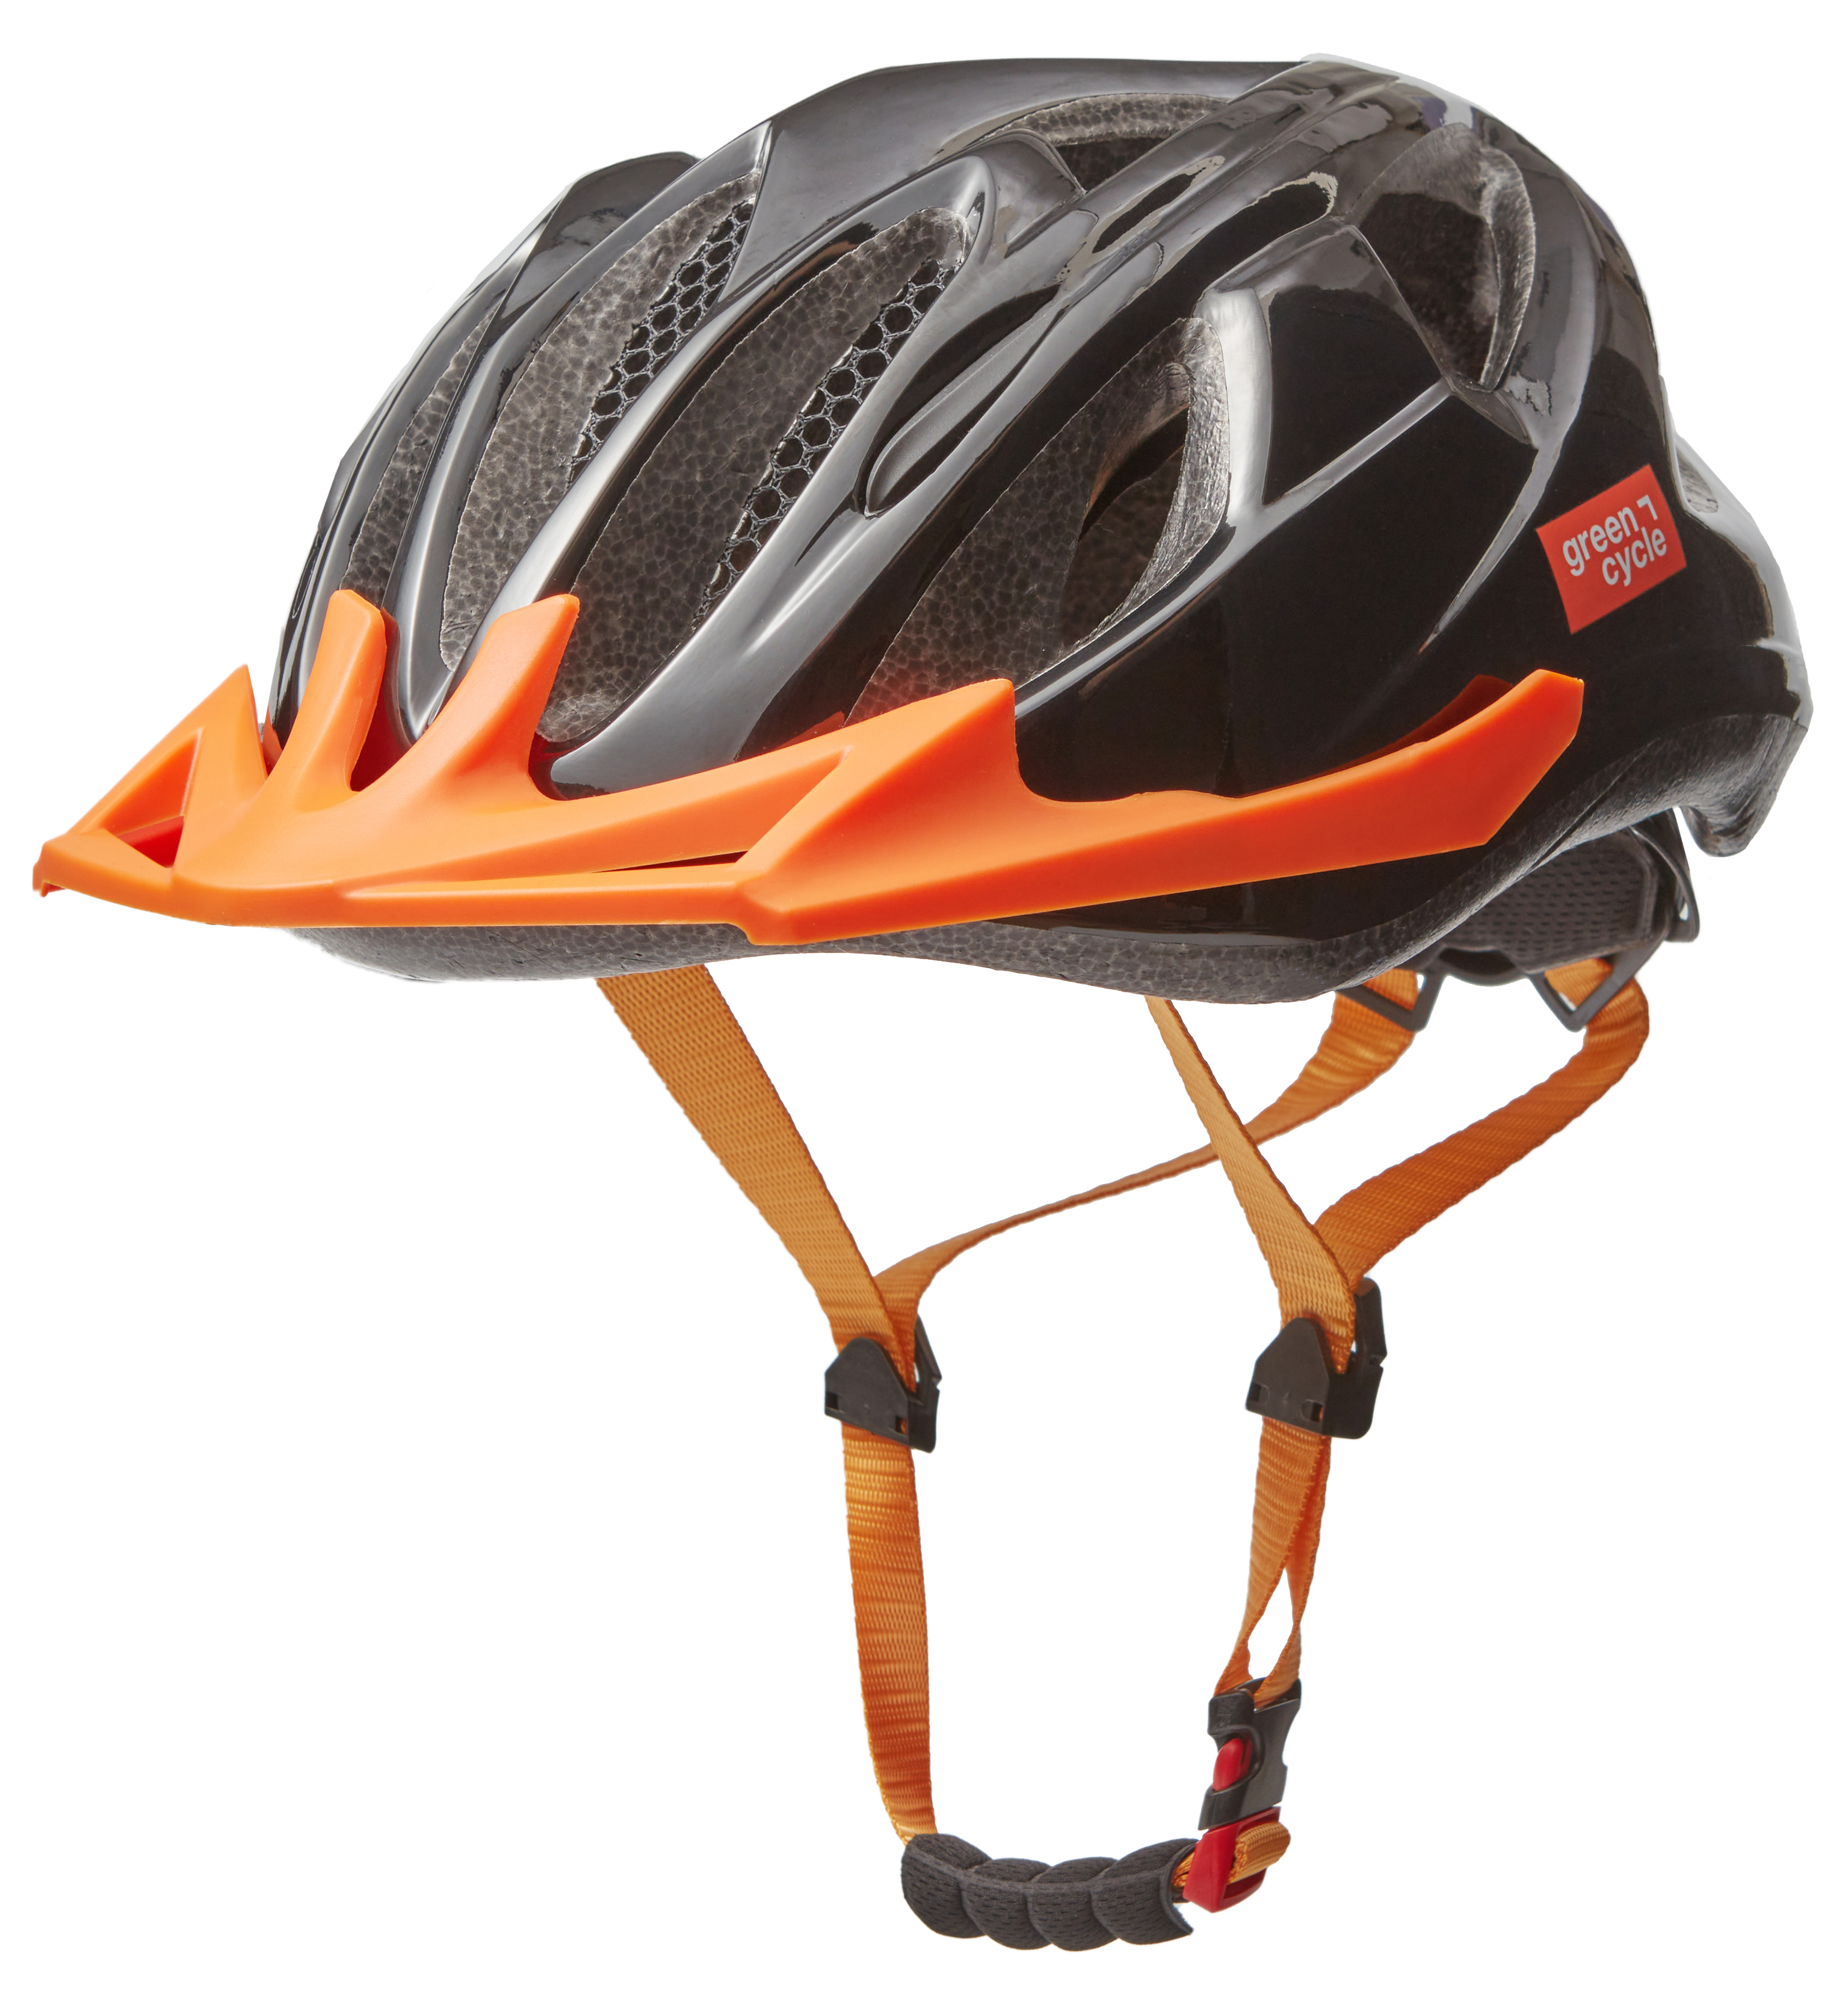 Шлем детский Green Cycle ROWDY размер 50-54см черно-оранжевый лак